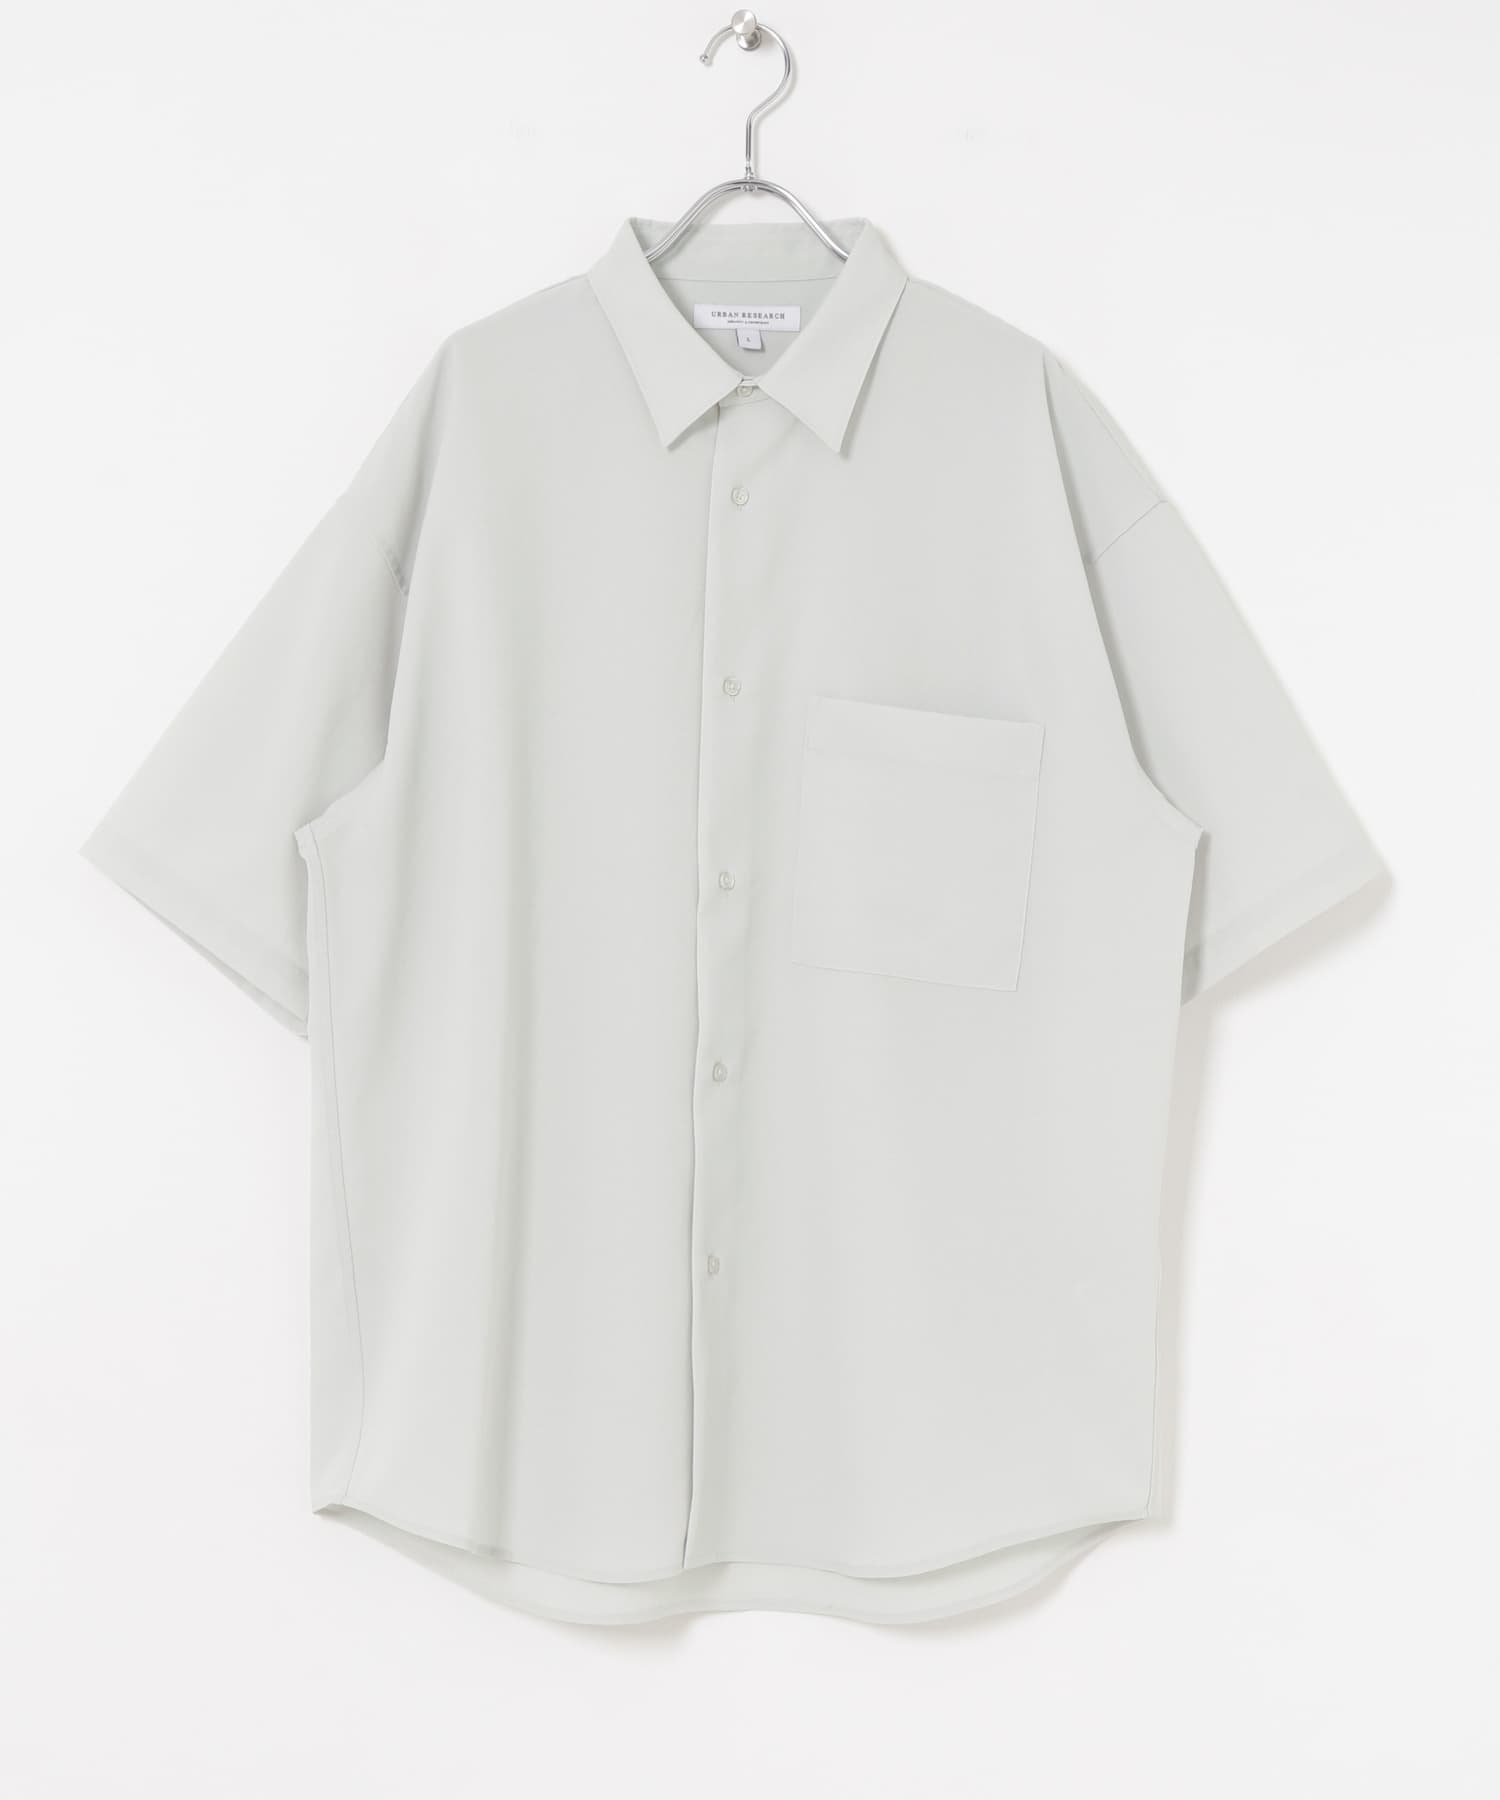 【快乾/抗皺】UR TECH 短袖襯衫(冰灰色-M-OFF WHITE)